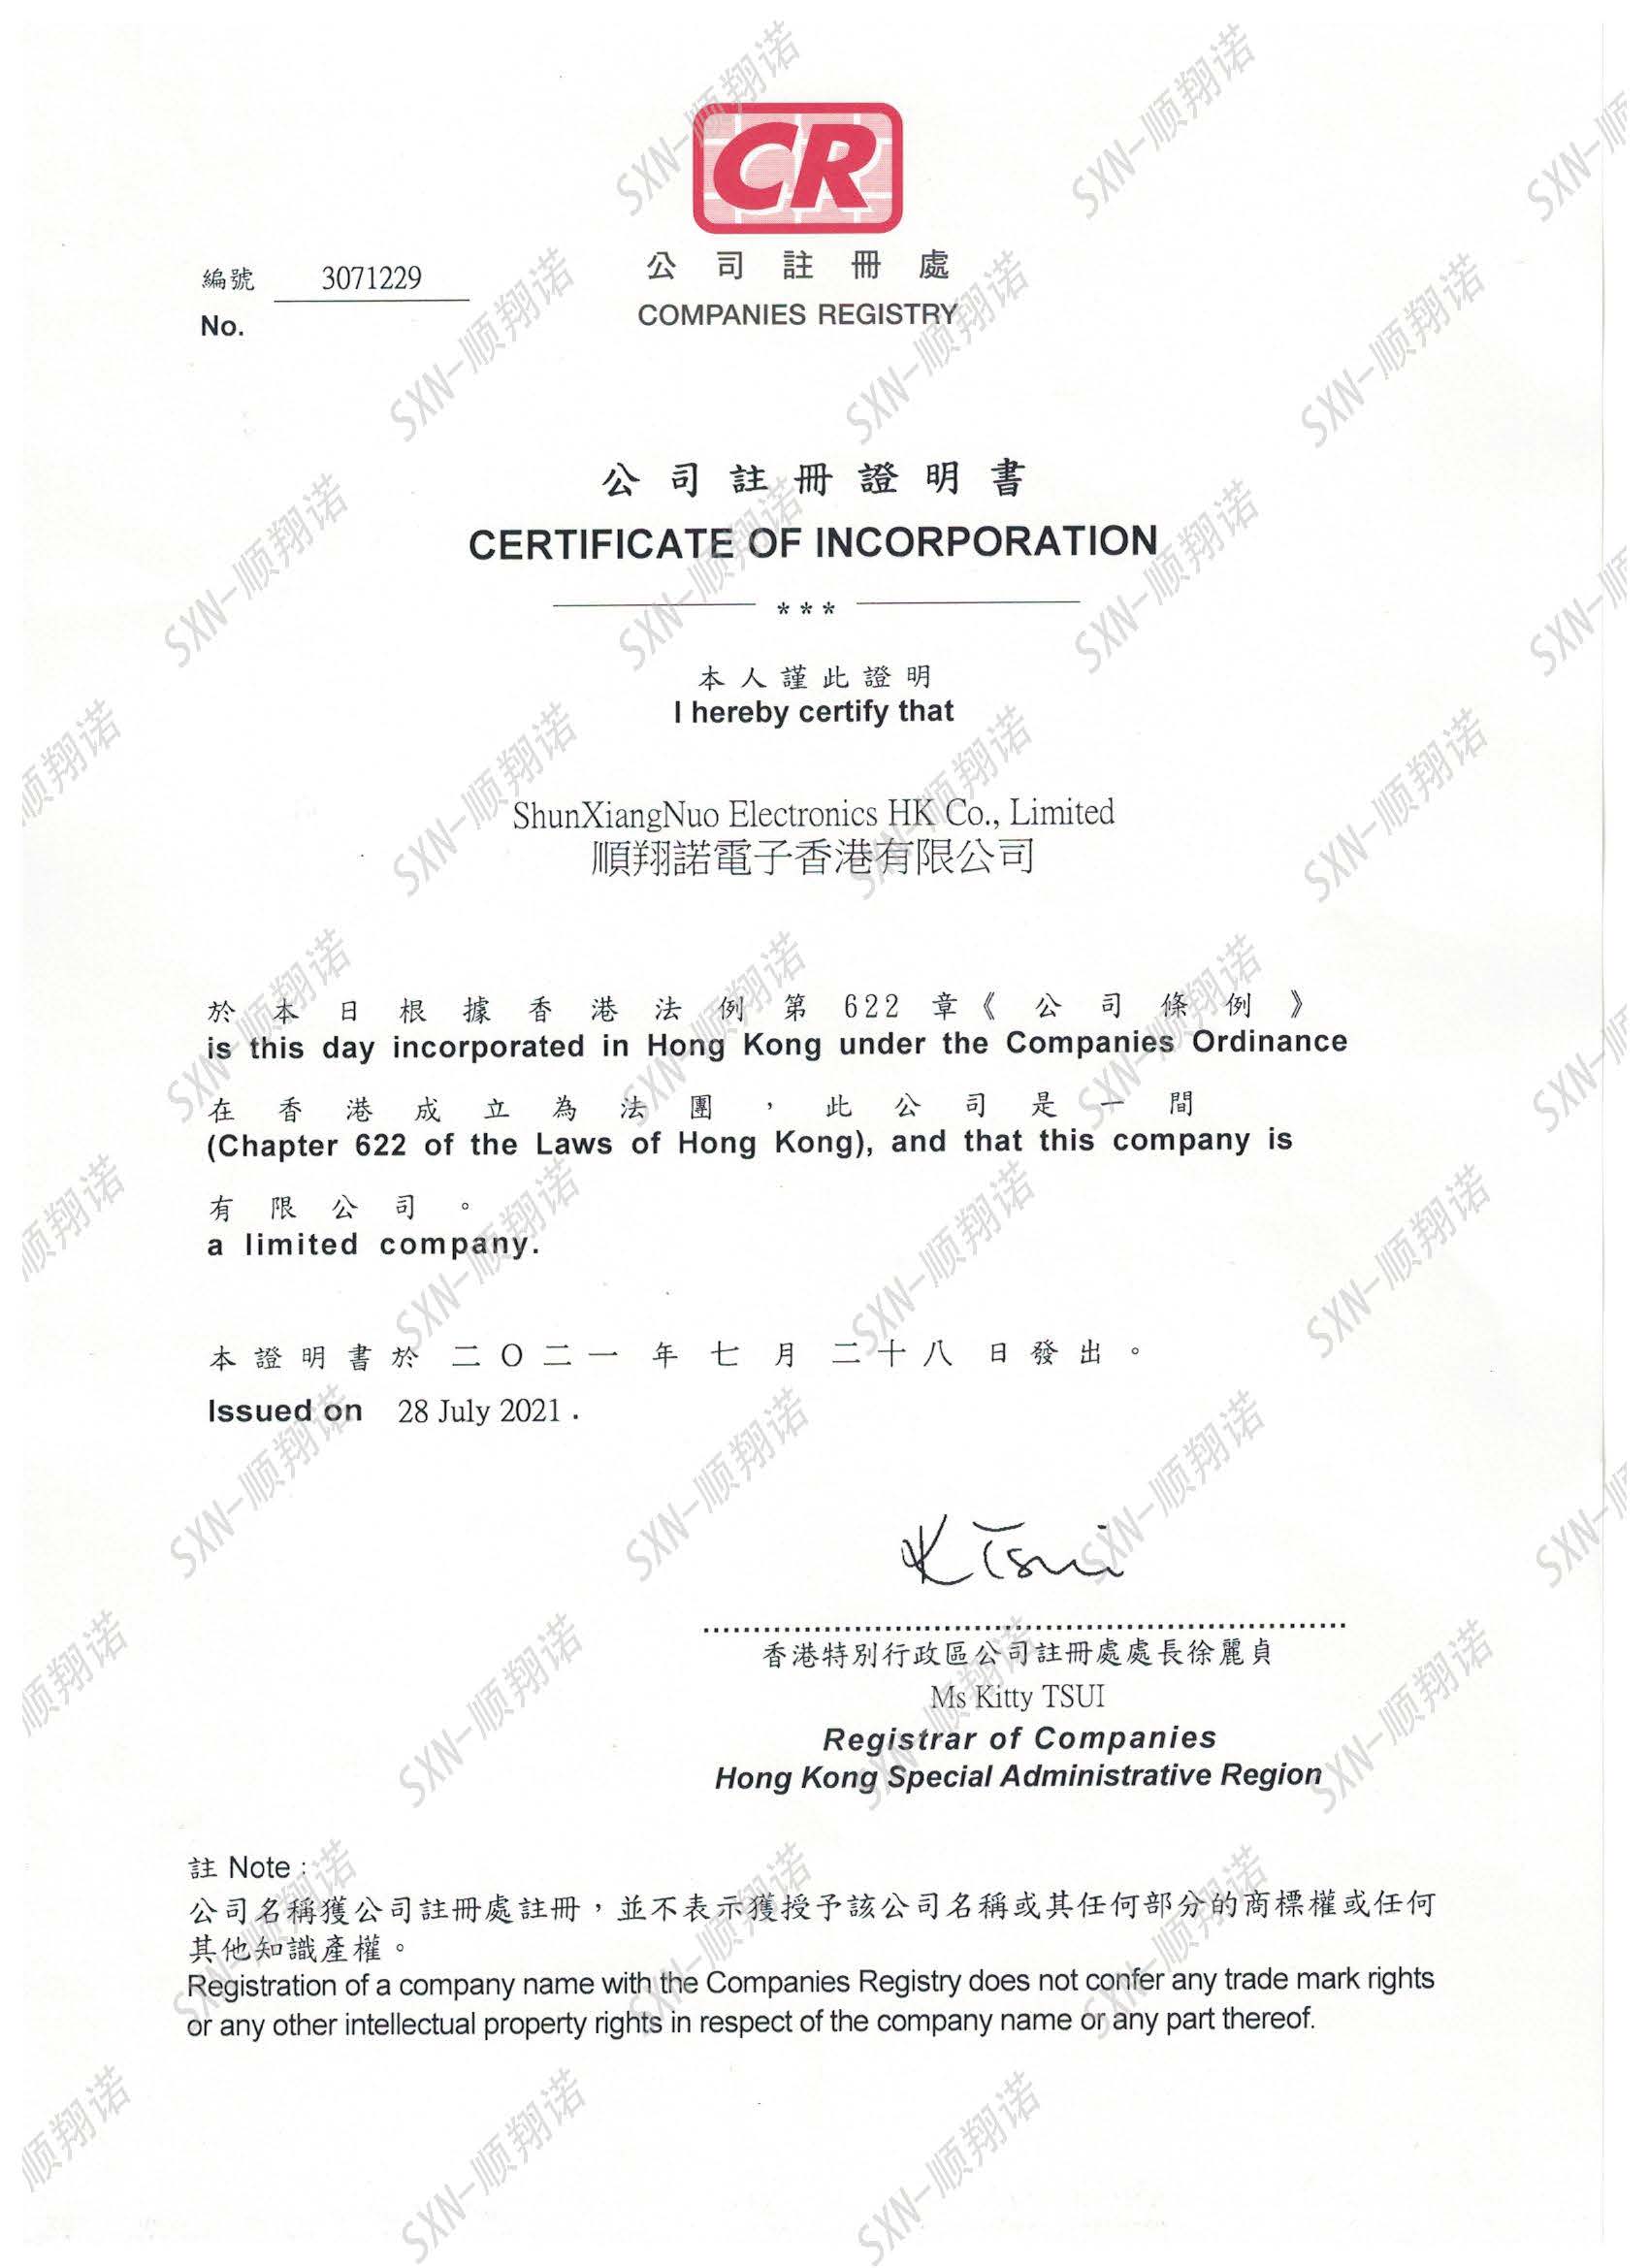 Establishment of Hong Kong company